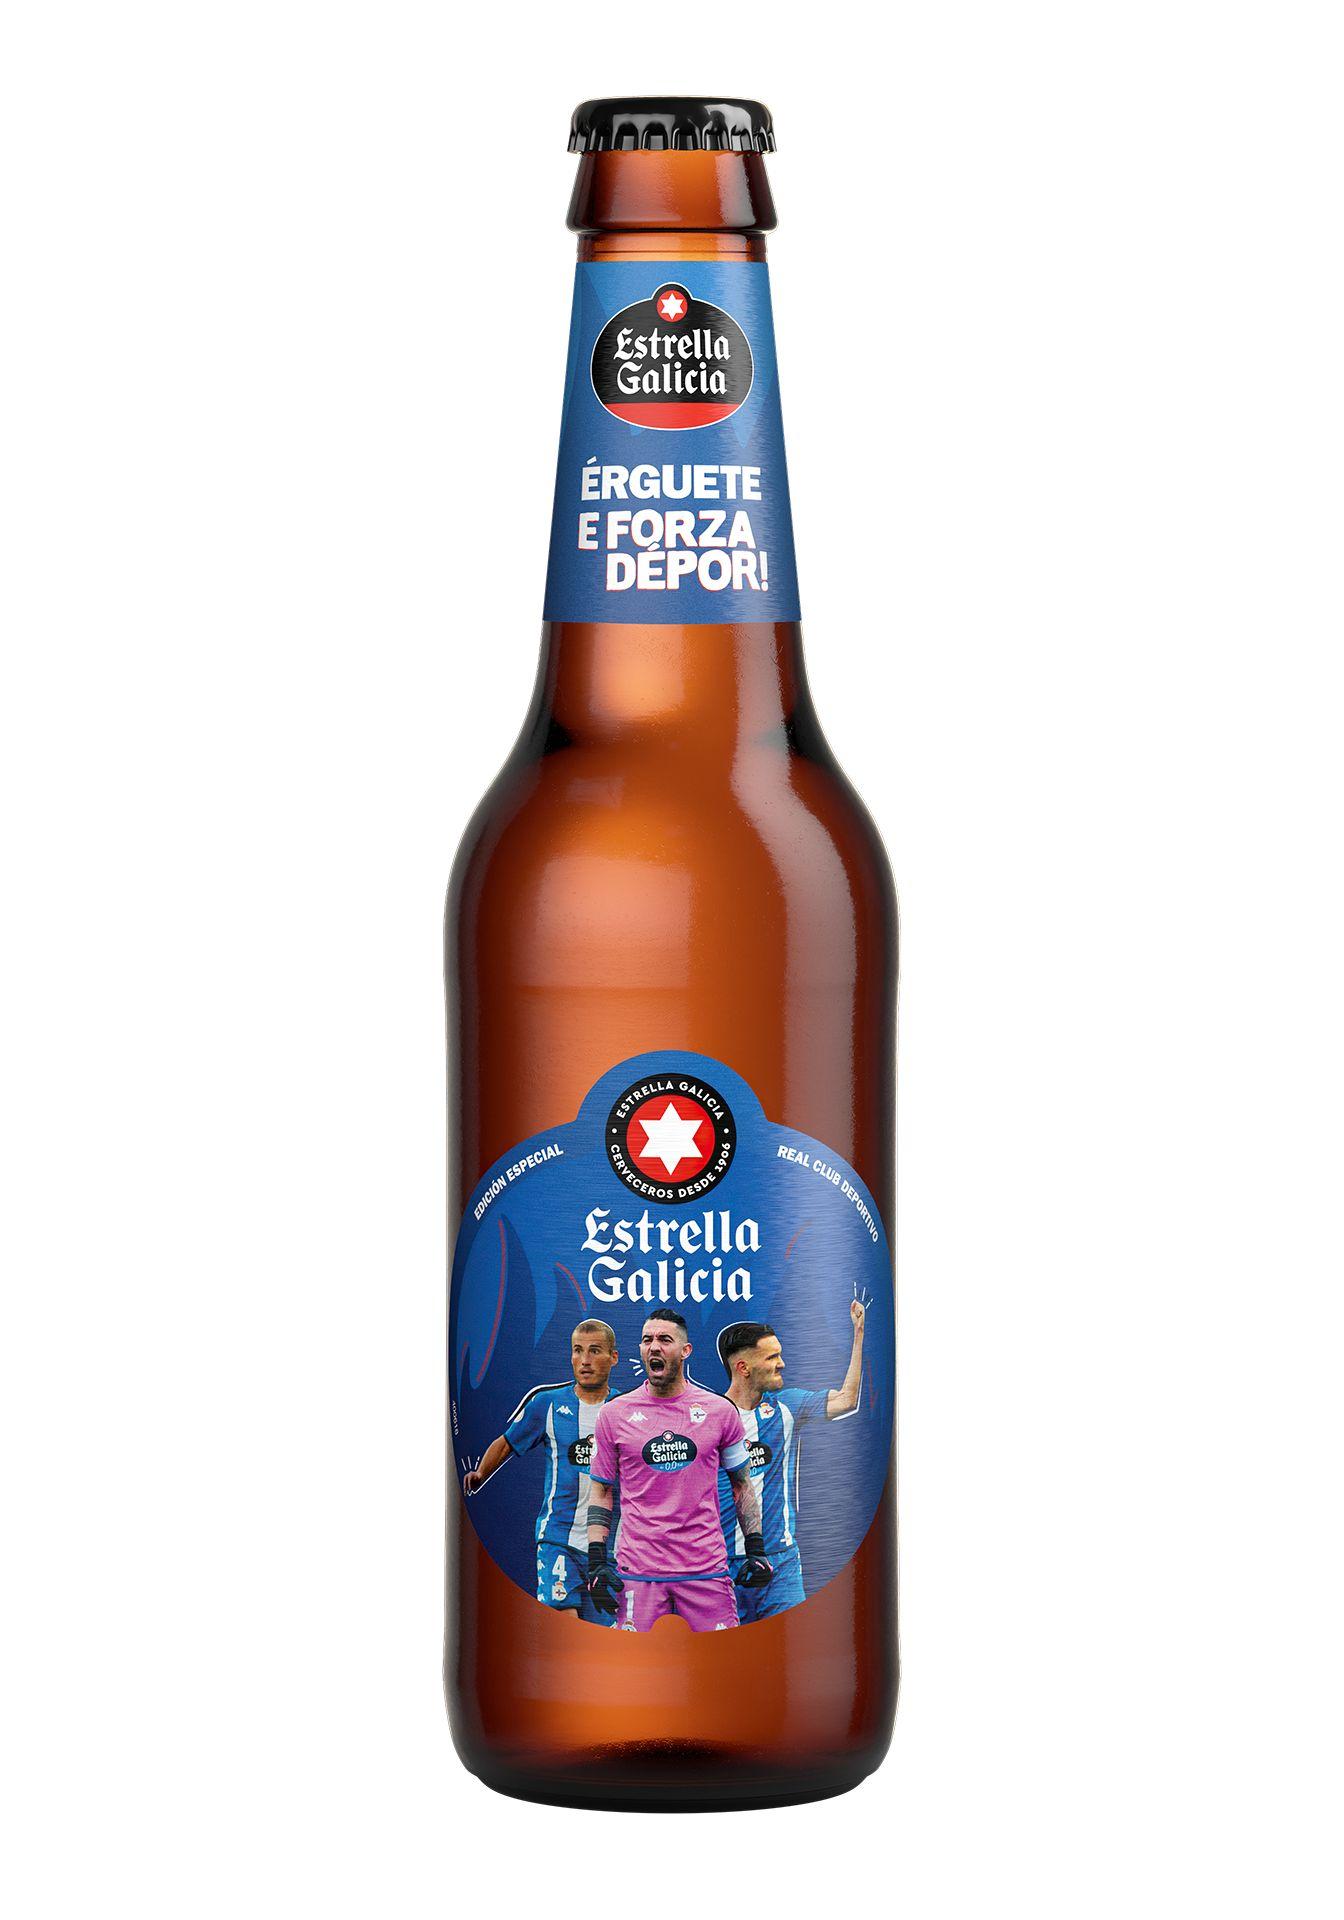 Una cerveza de la edición especial de Estrella Galicia (Hijos de Rivera).